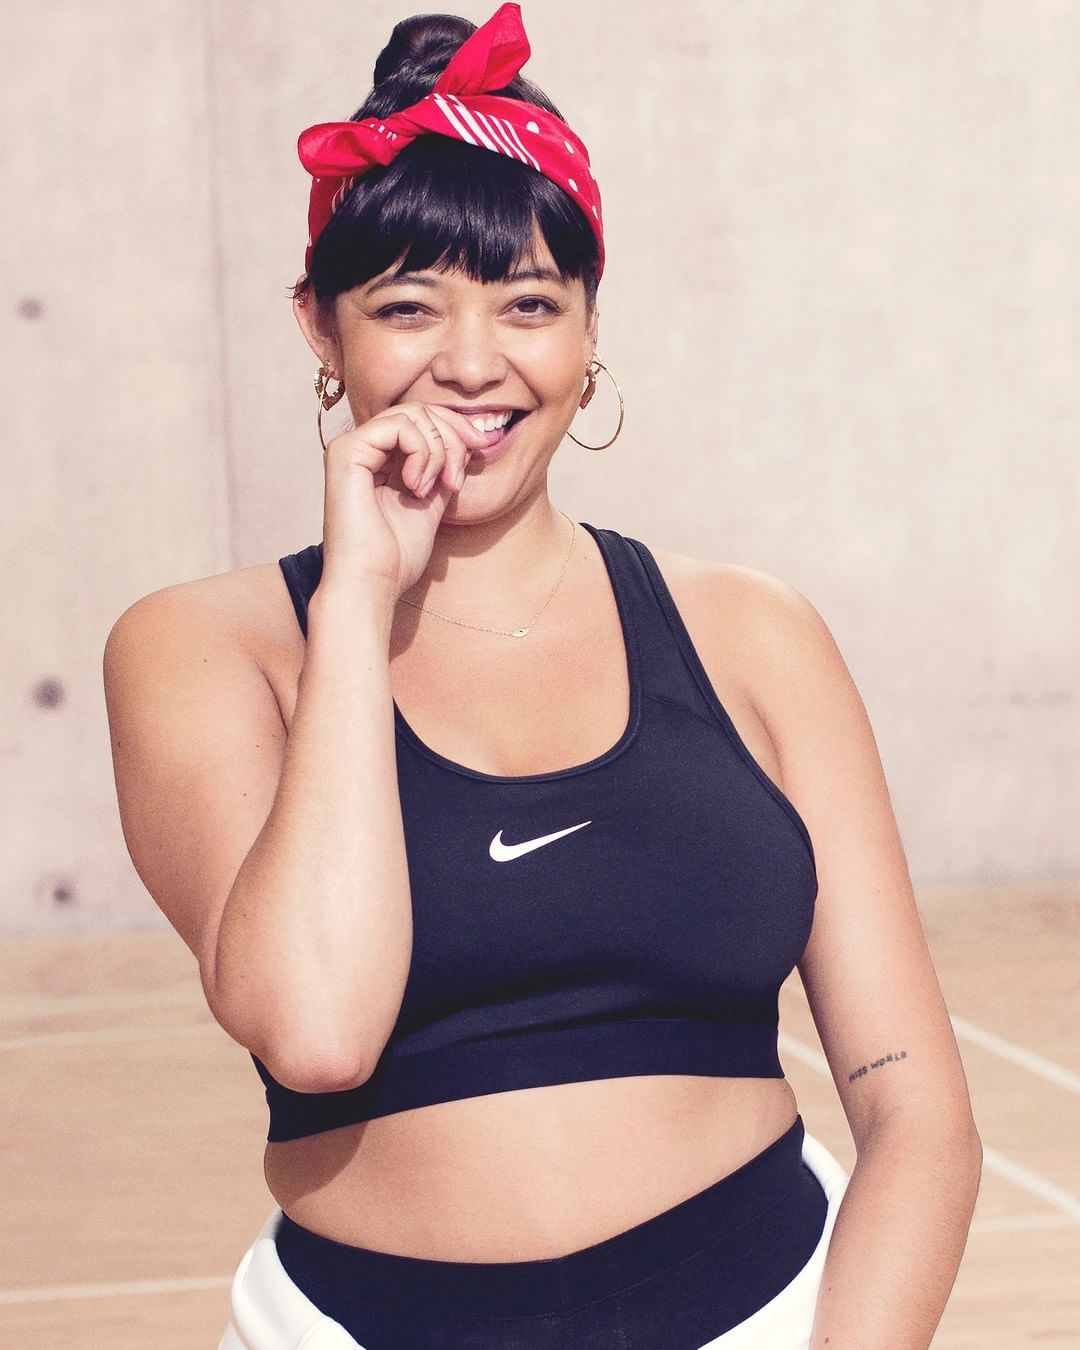 Nike выпустили первую коллекцию одежды plus size - фото